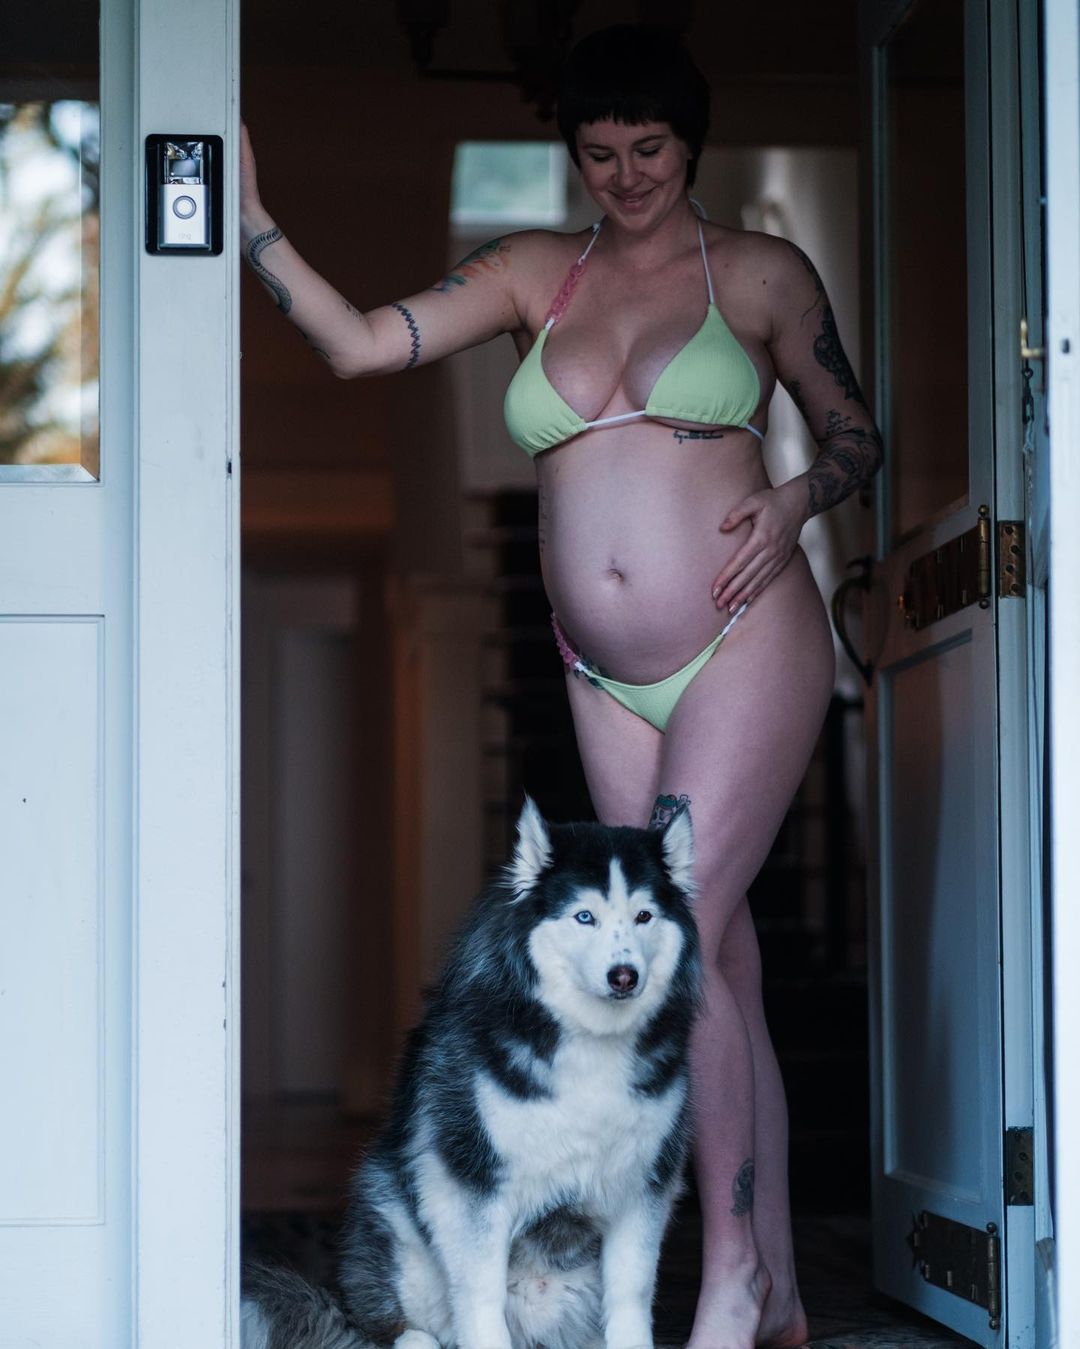 Беременная дочь Алека Болдуина и Ким Бейсингер на шестом месяце показала фигуру в бикини